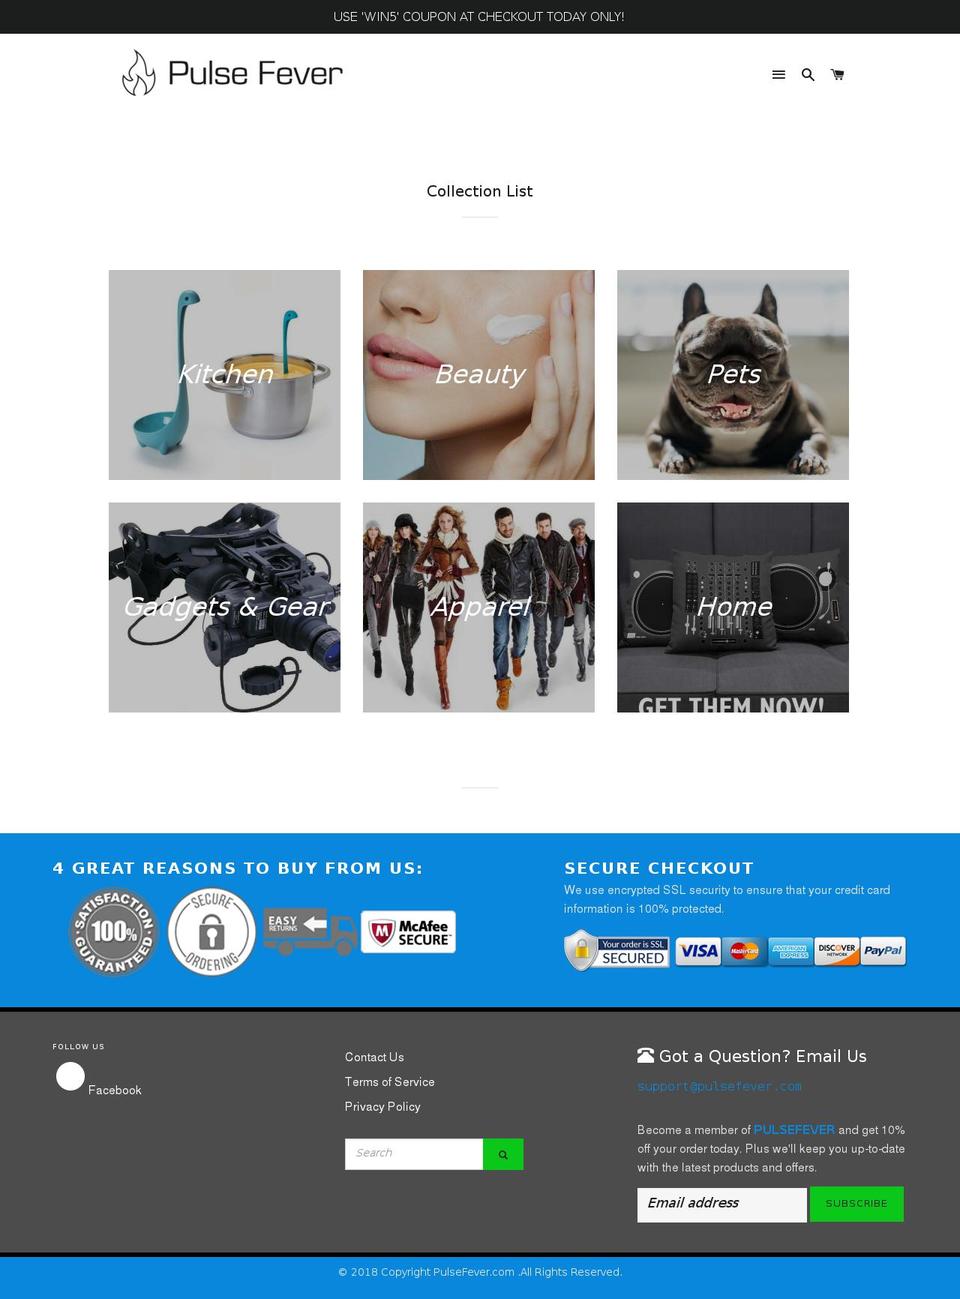 pulsefever.com shopify website screenshot